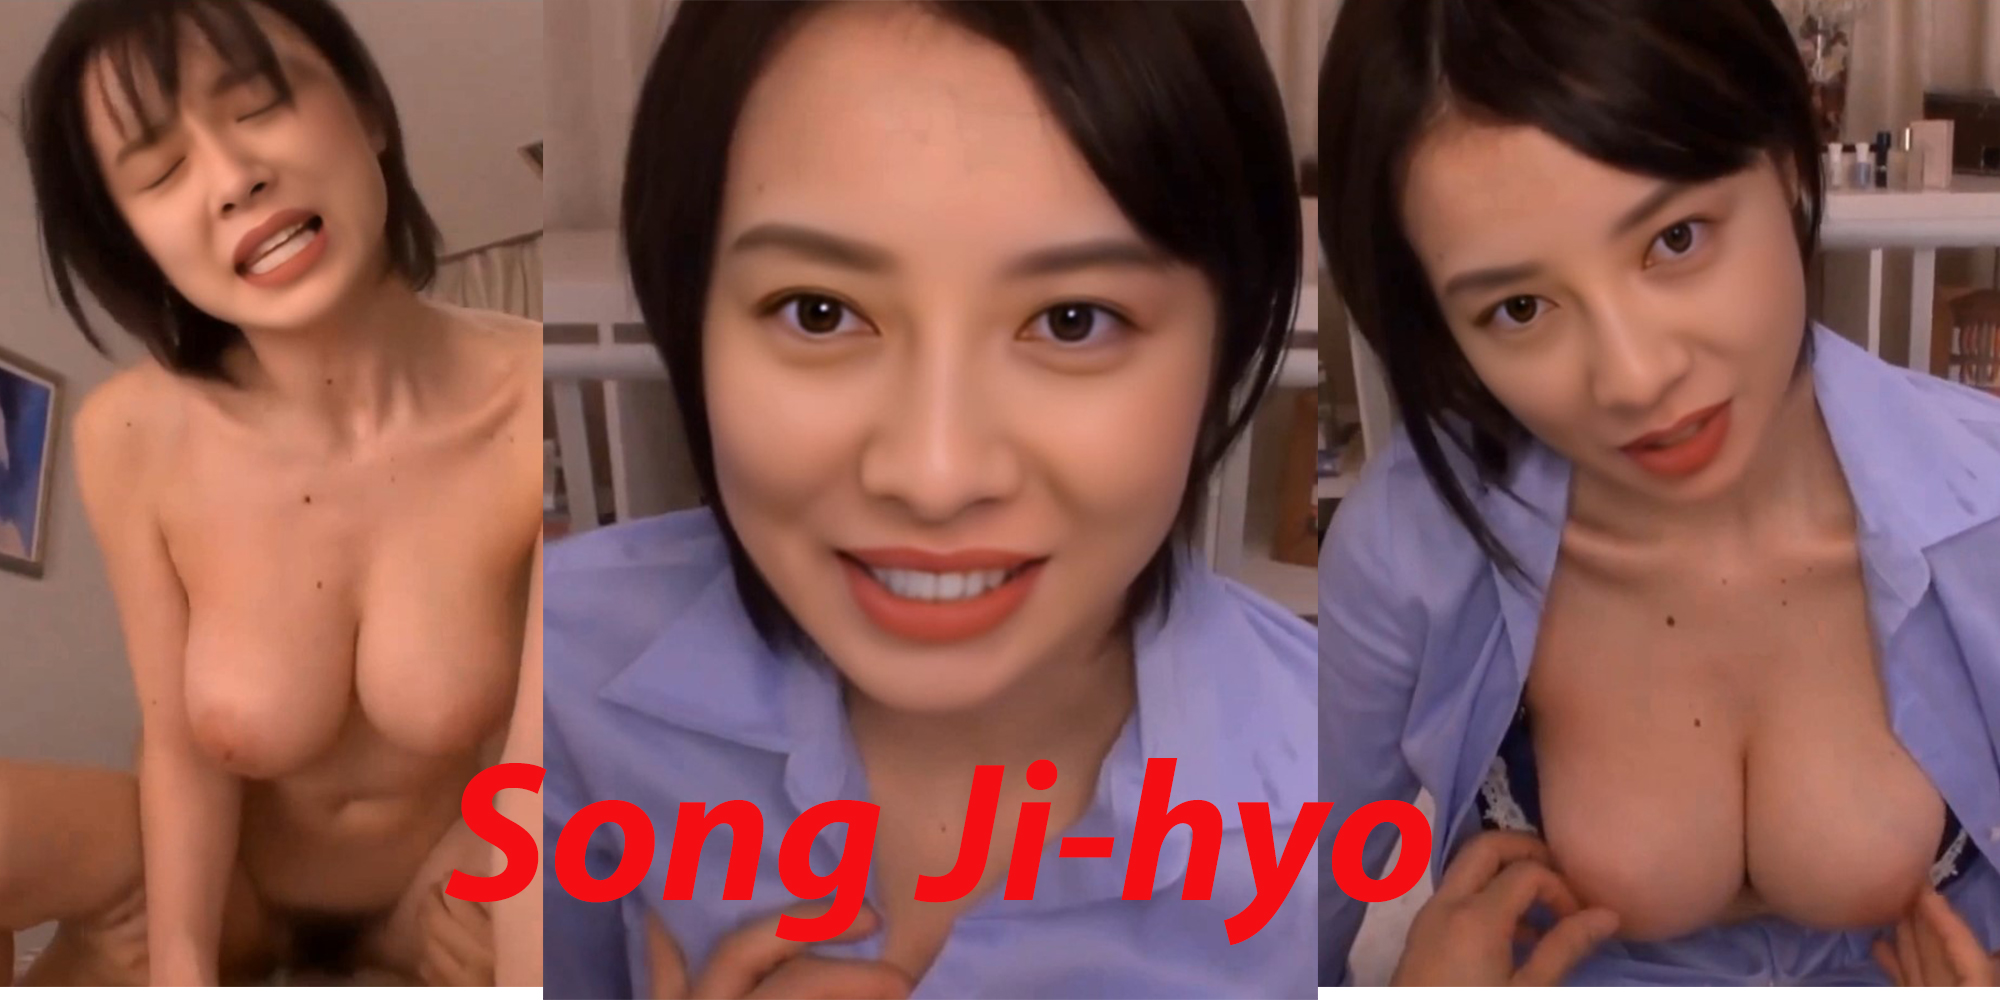 Song JiHyo gets fucked hard